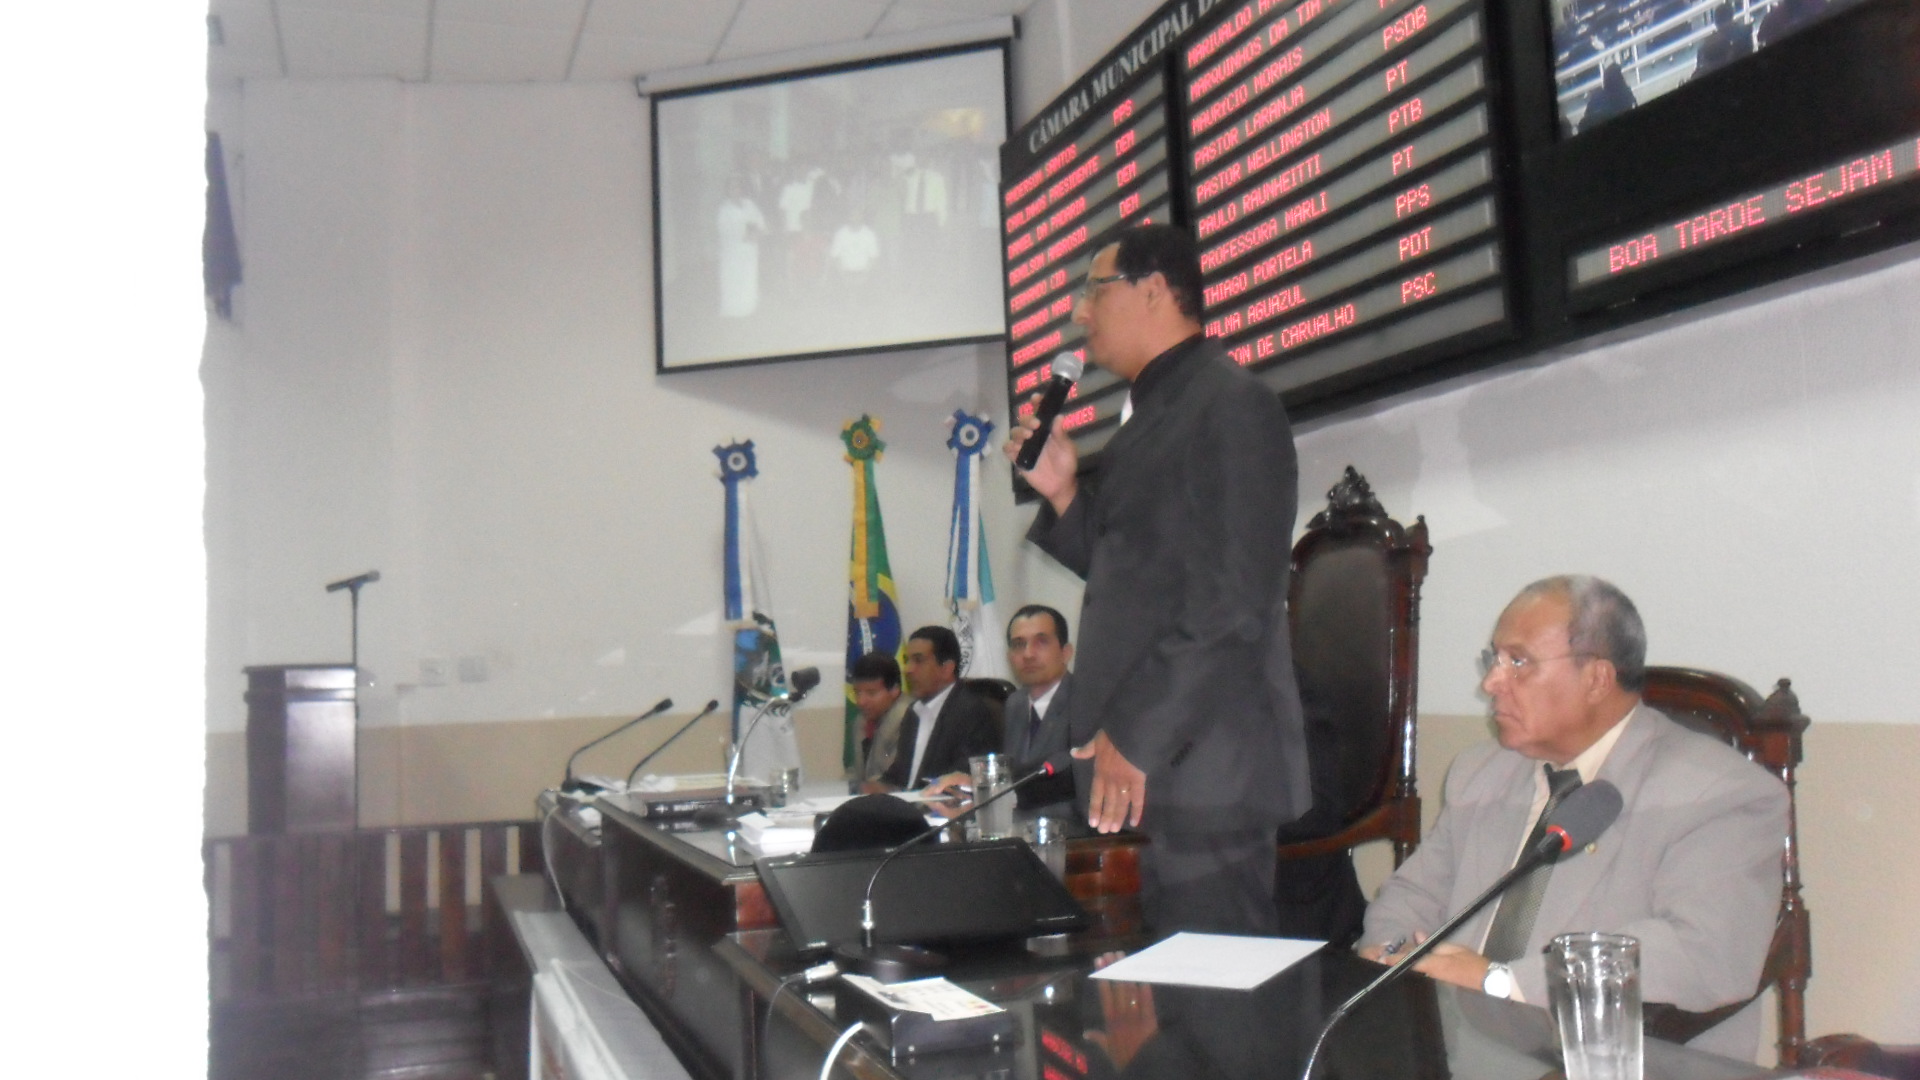 Palestra na Câmara de Vereadores de Nova Iguaçu